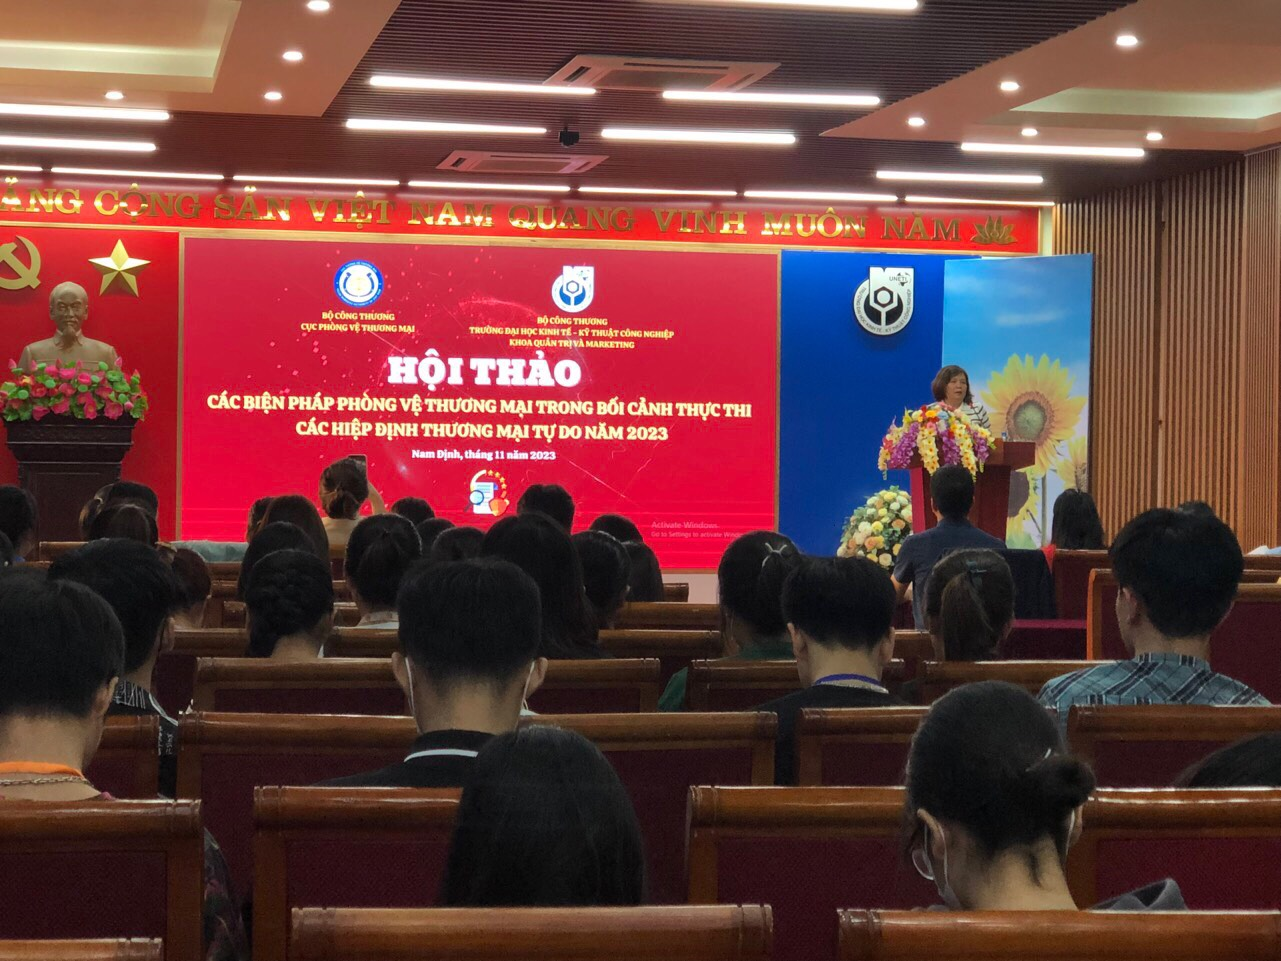 Cục Phòng vệ thương mại tổ chức hội thảo “Các biện pháp phòng vệ thương mại trong bối cảnh thực thi các hiệp định thương mại tự do năm 2023” tại TP Nam Định